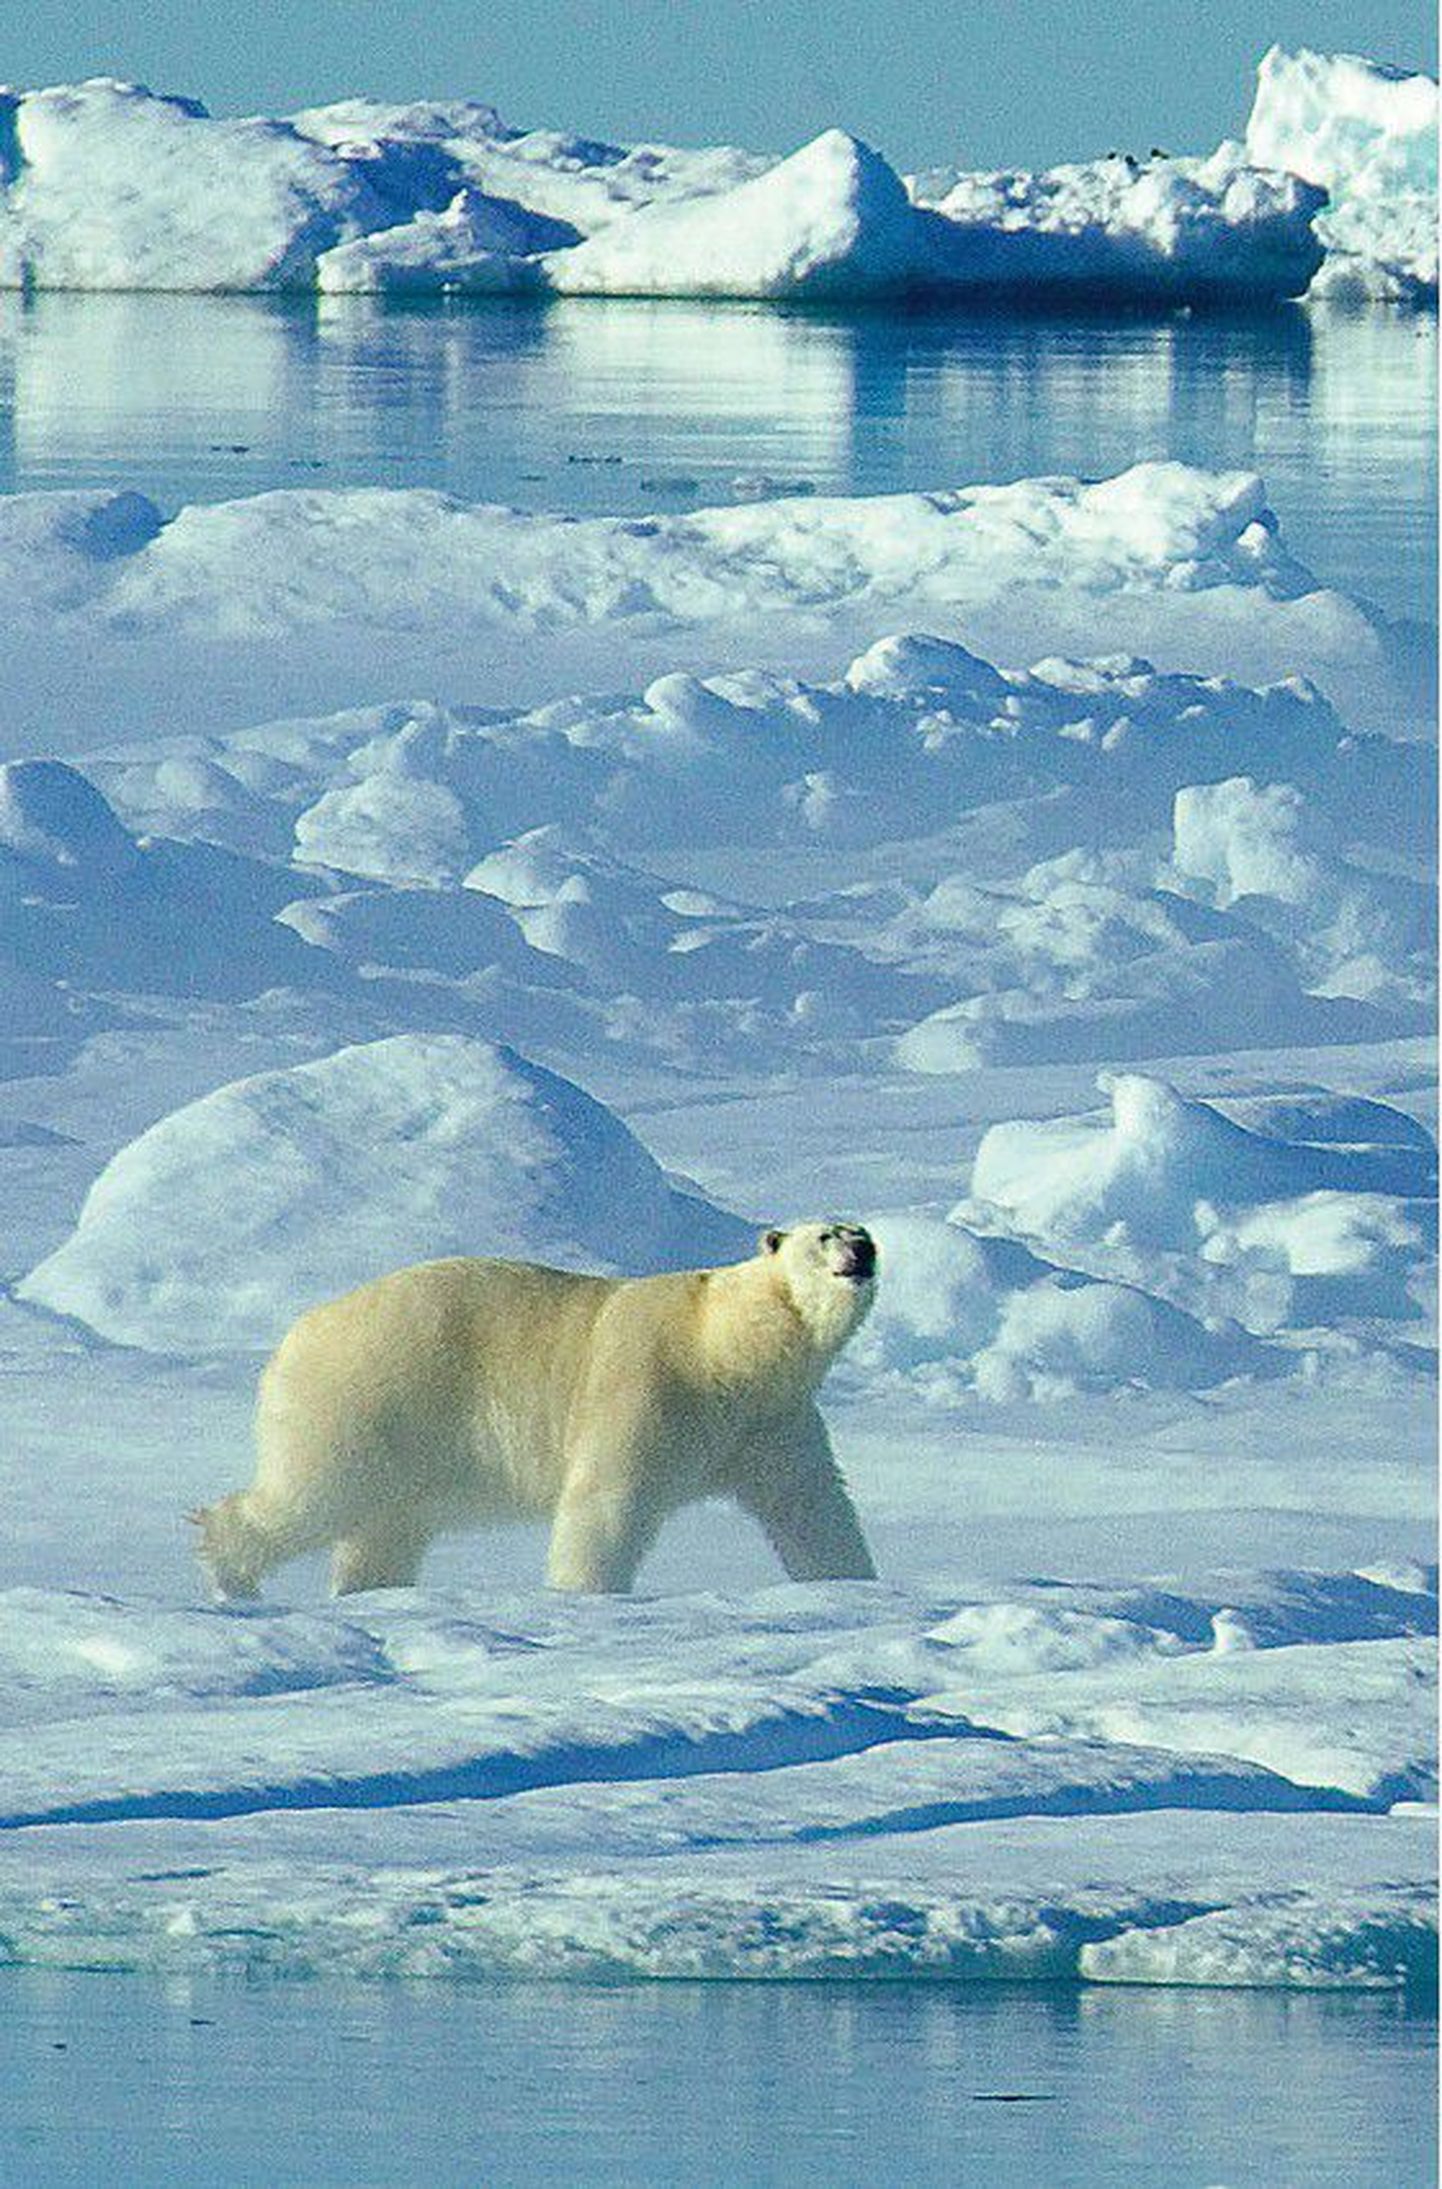 Praegu Kanadale kuuluv jääkaru sealsetel arktilistel aladel. Puhta loodusega Arktika jää all on peidus maavarad, mida riigid endale soovivad.